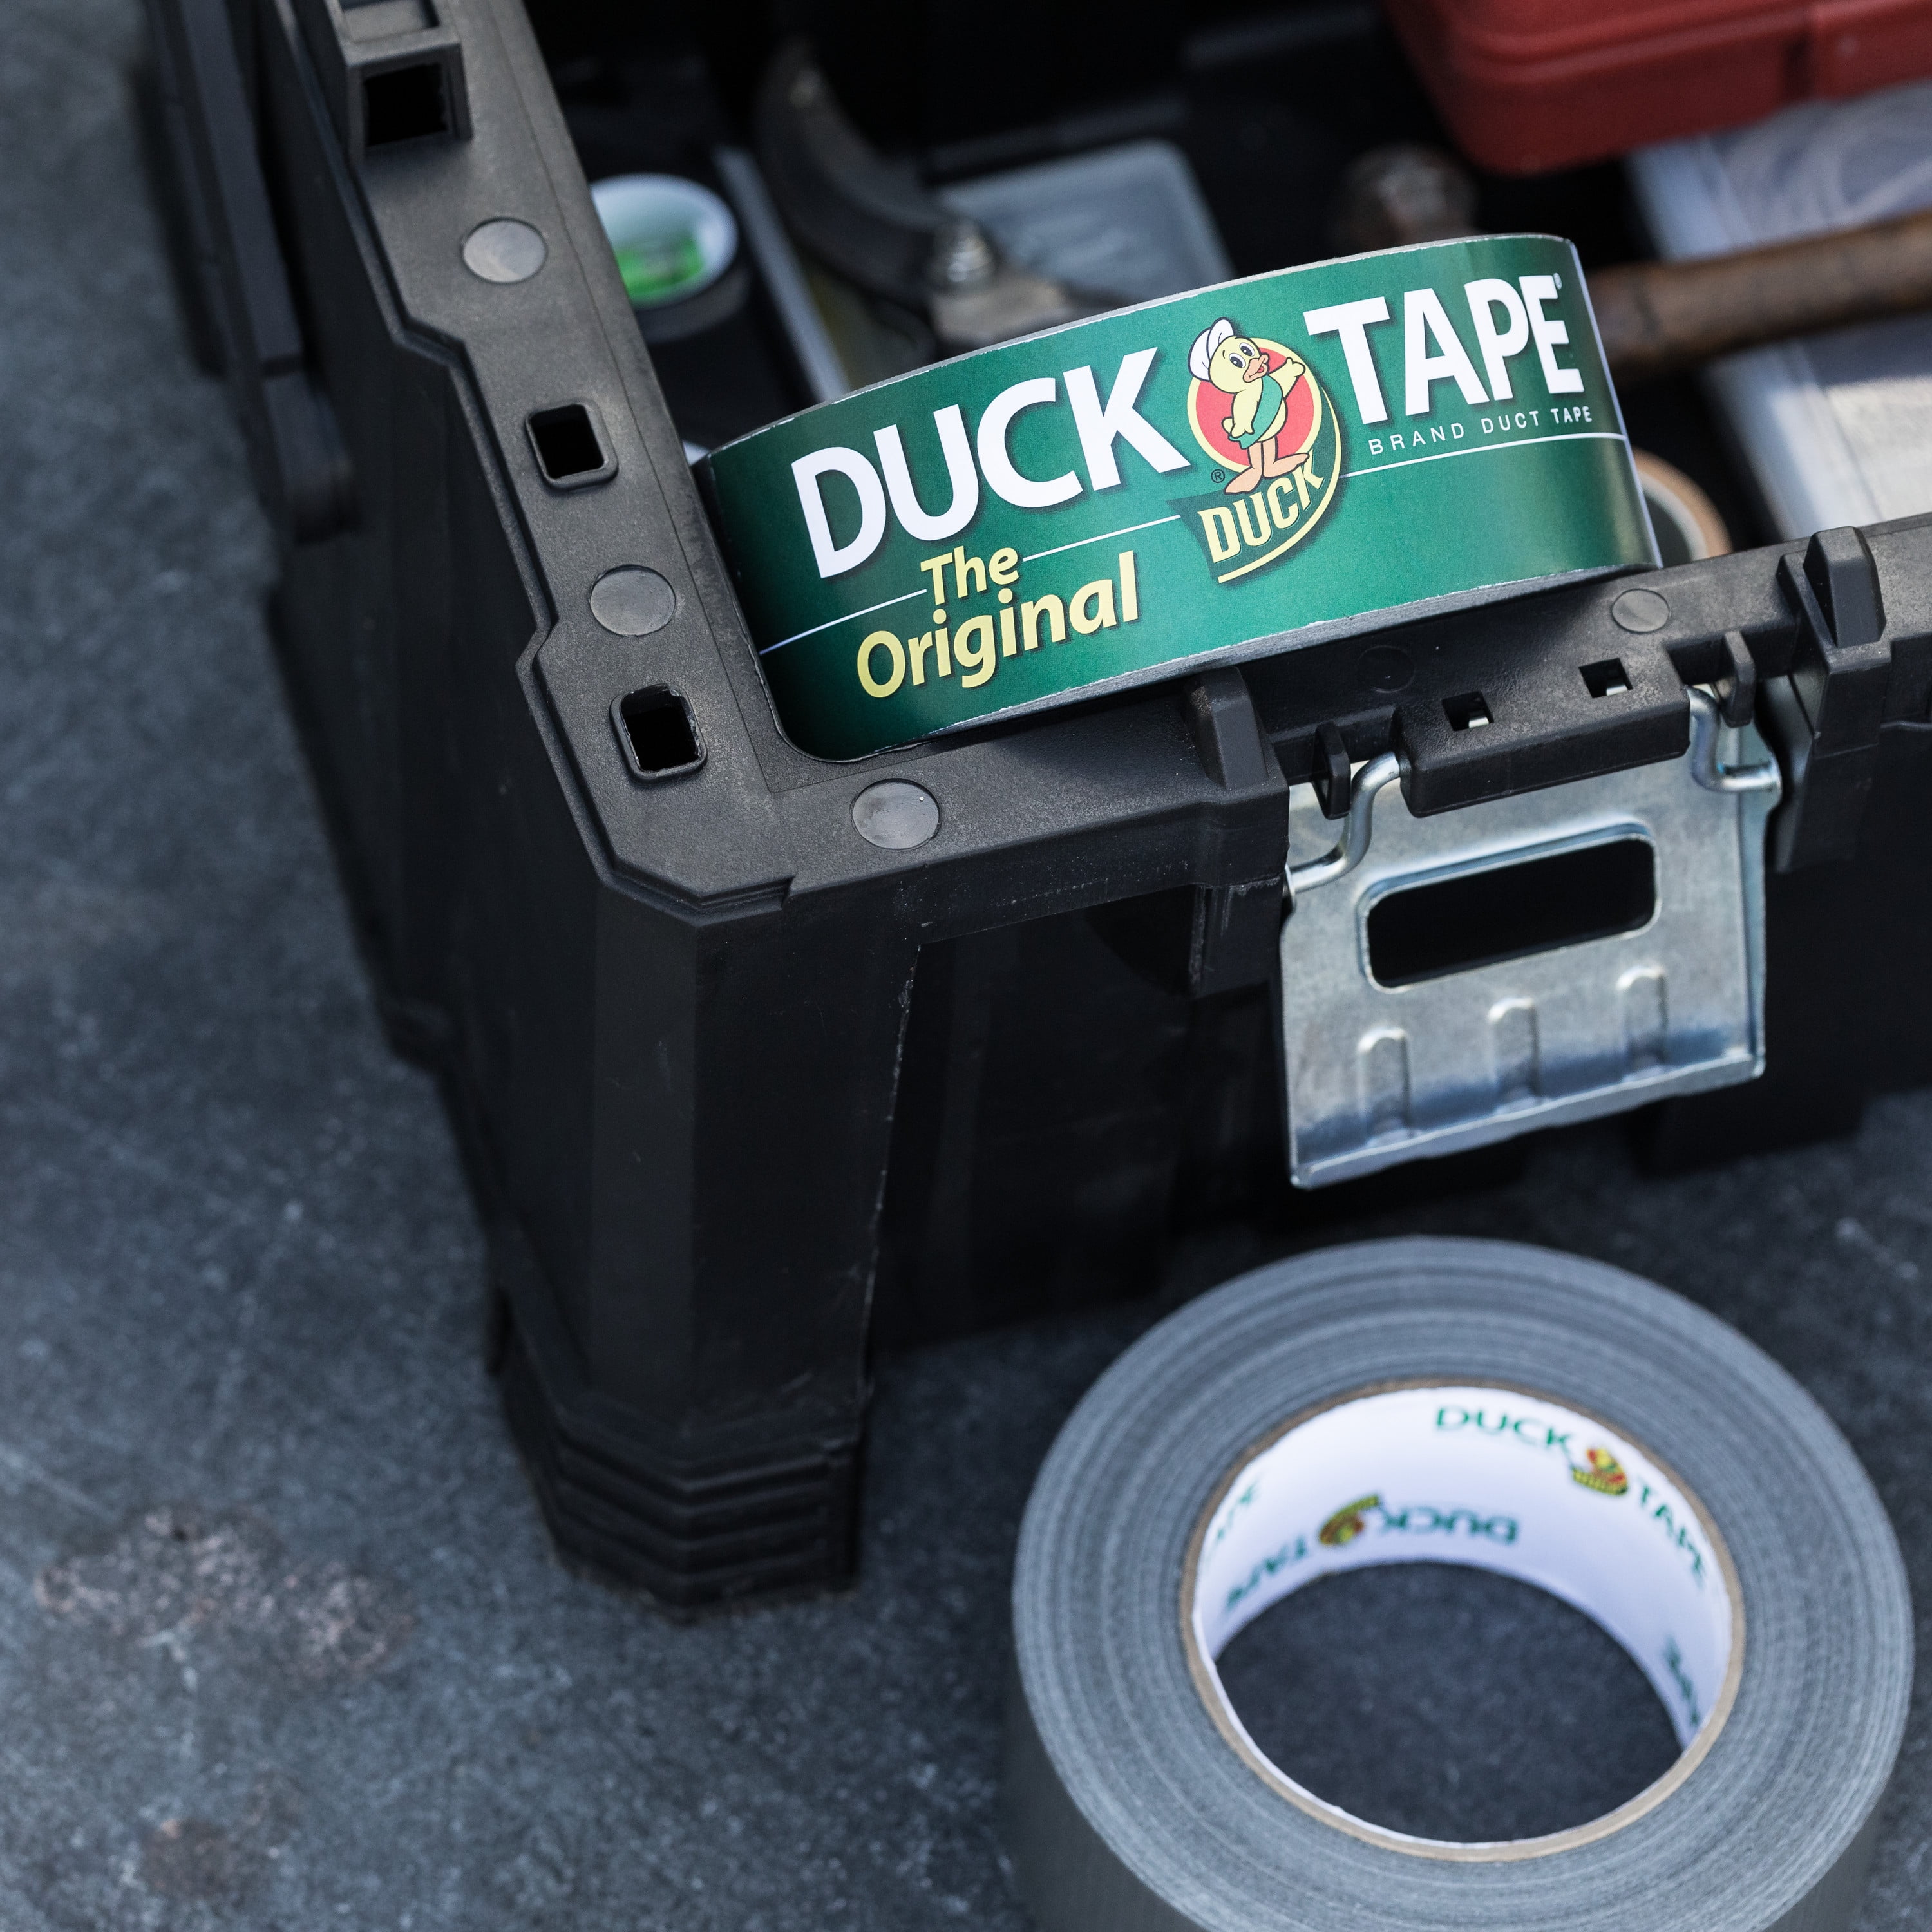 Duck® Heavy Duty White Duct Tape, 1 ct - Kroger